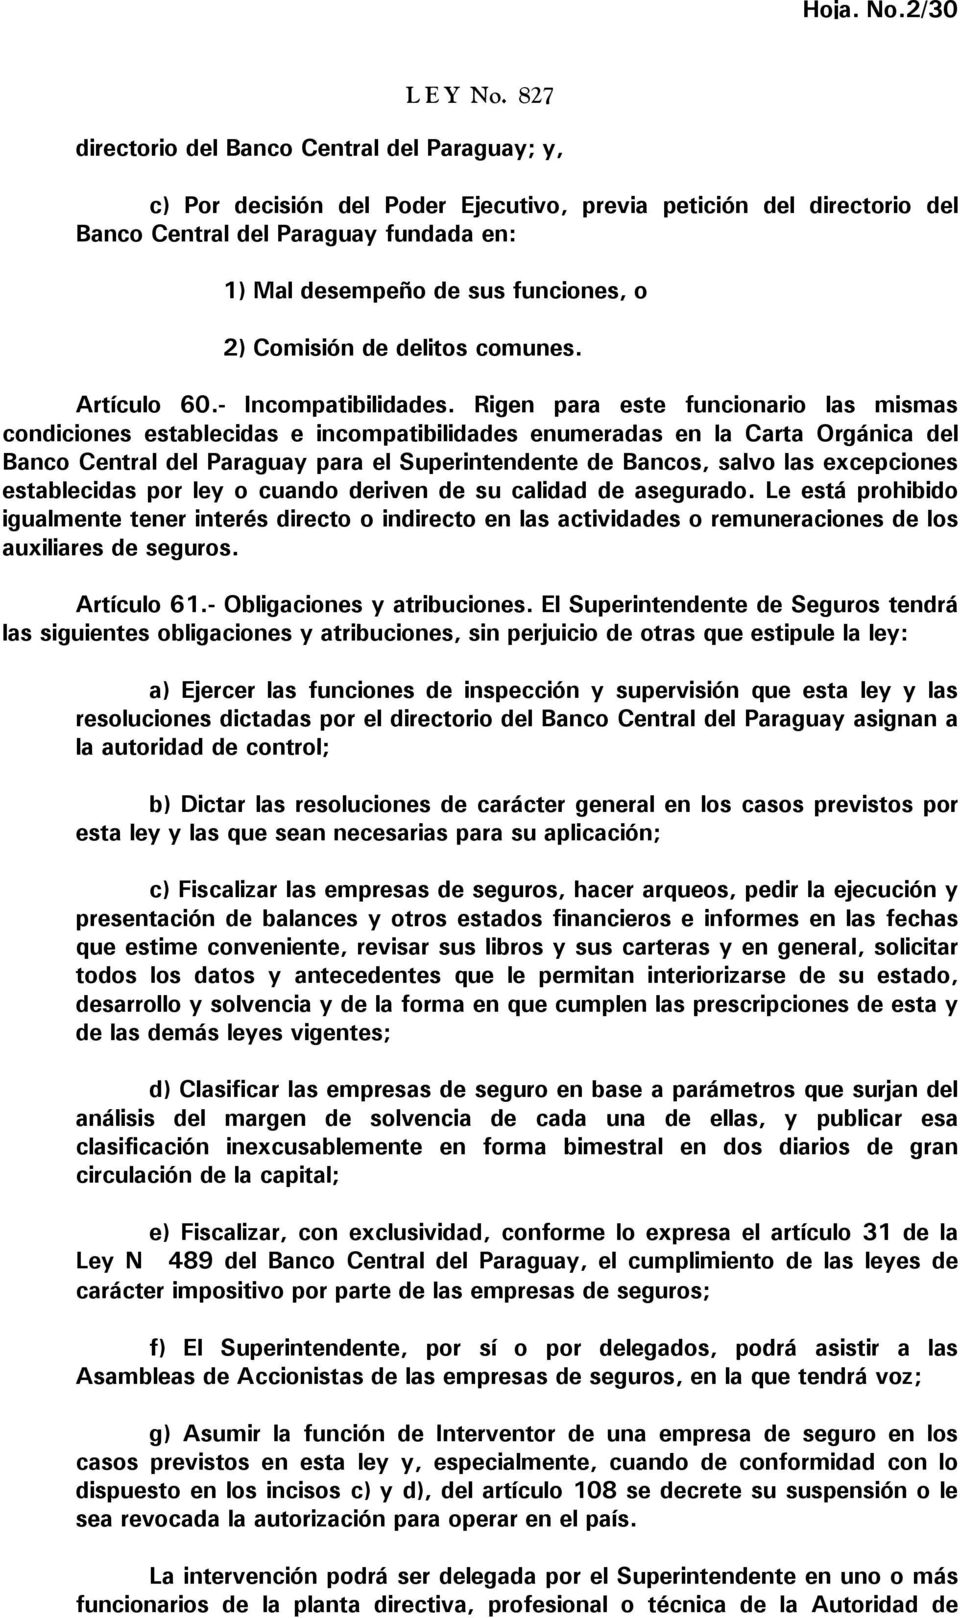 Rigen para este funcionario las mismas condiciones establecidas e incompatibilidades enumeradas en la Carta Orgánica del Banco Central del Paraguay para el Superintendente de Bancos, salvo las